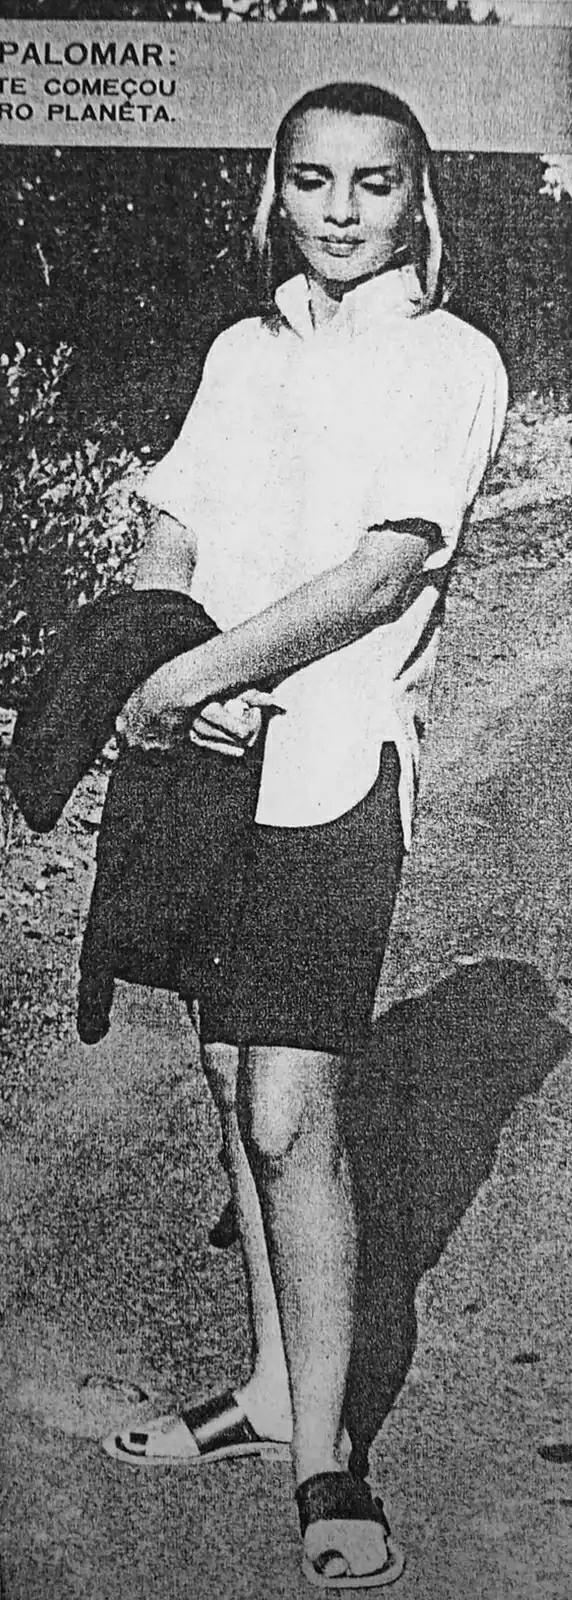 De vreemde vrouw in 1954 Palomar UFO Conference